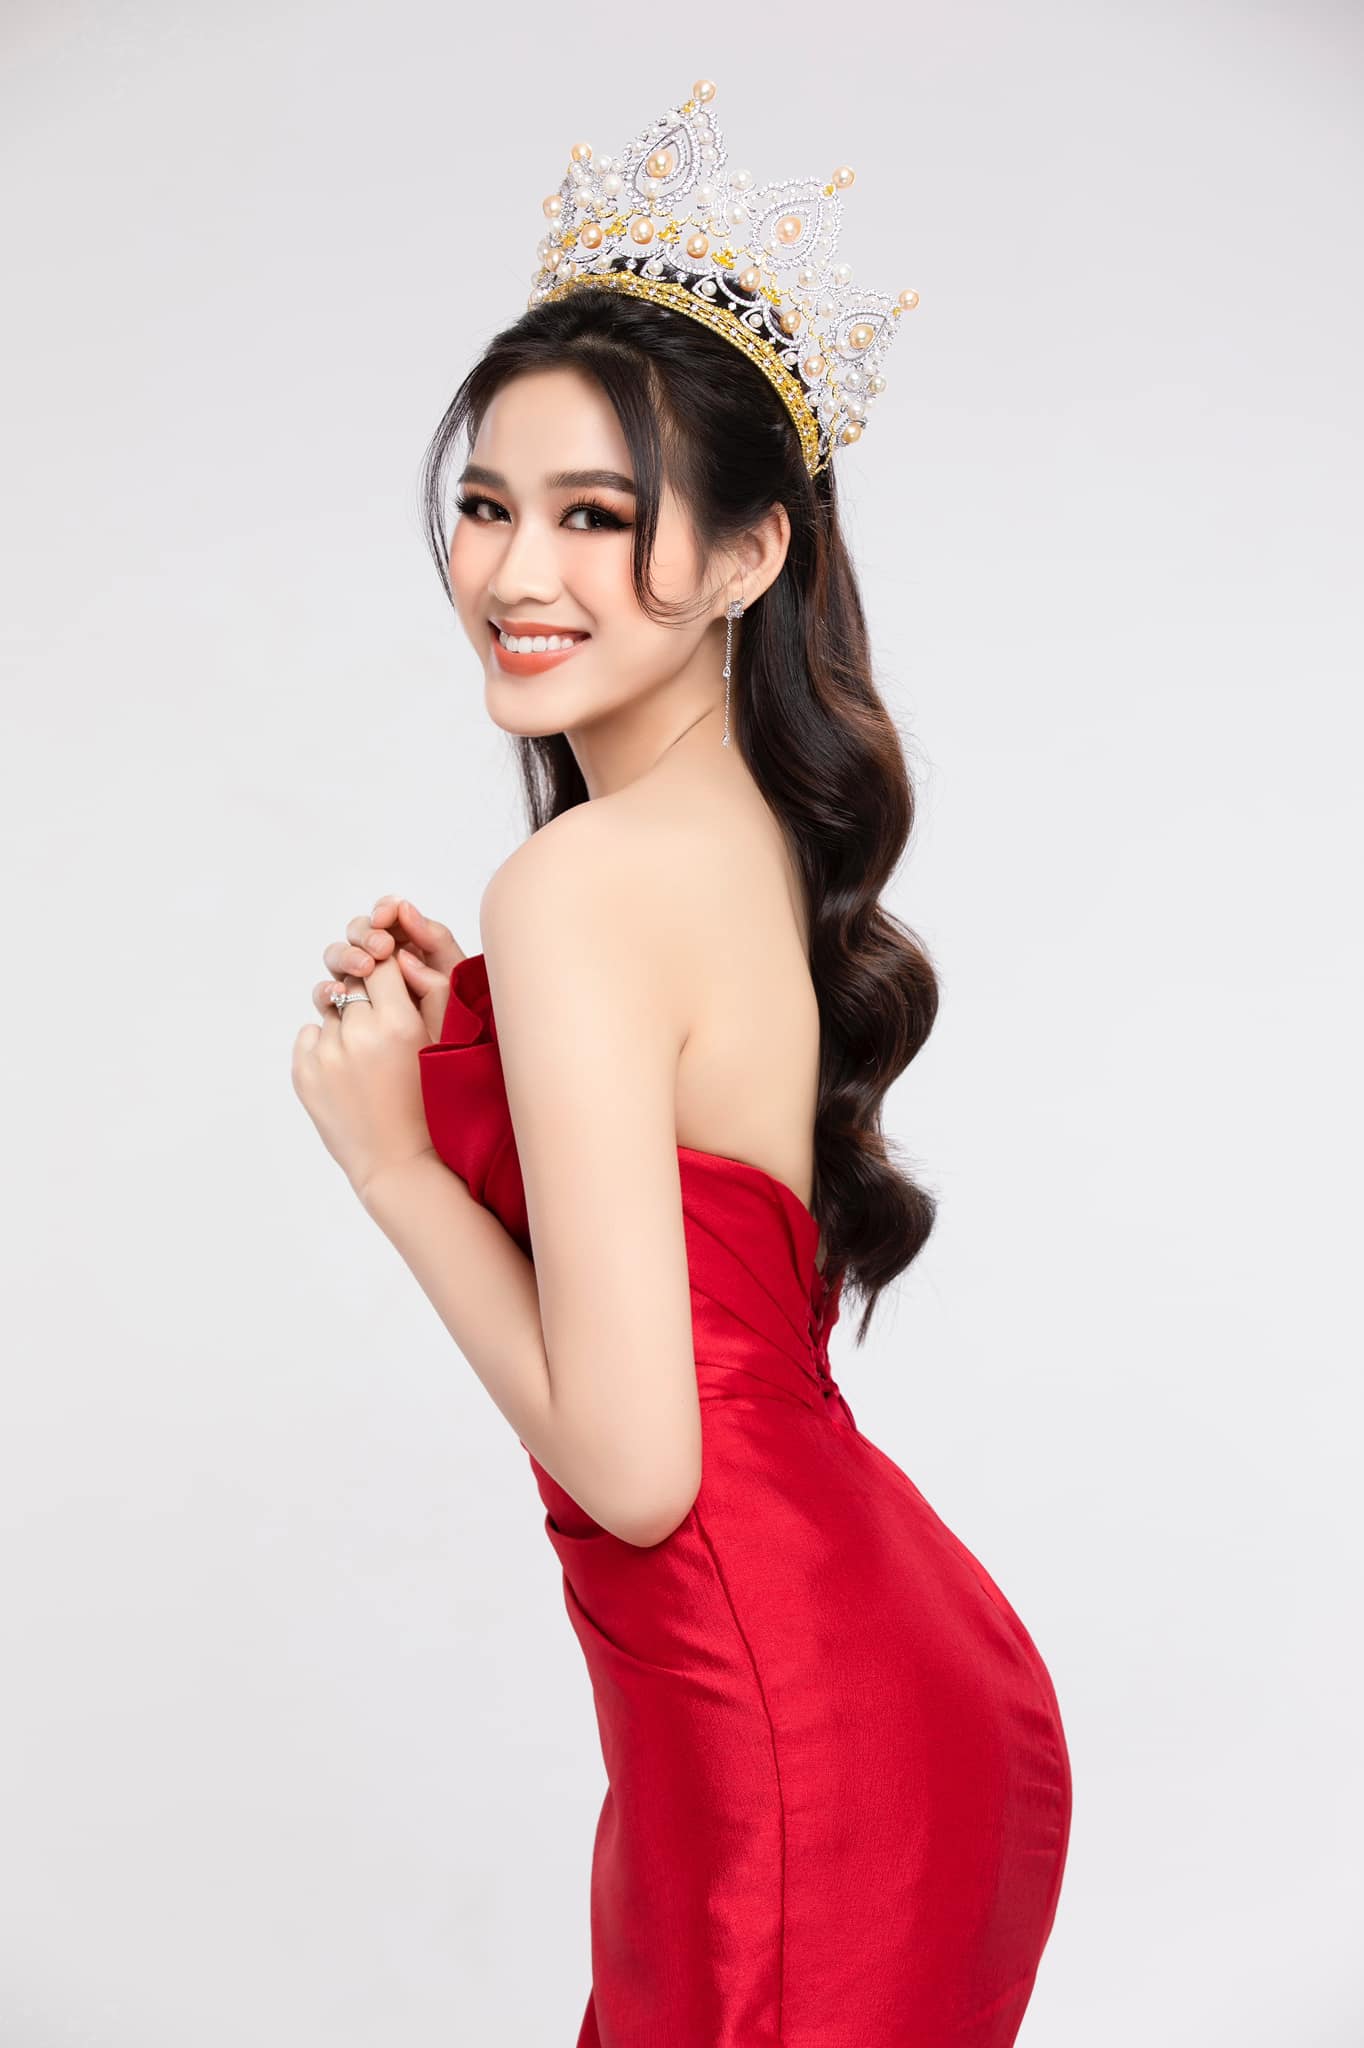 Đỗ Thị Hà mang trọn vẹn sự mộc mạc và cách ăn mặc thiếu 'gu' tới Miss World dù đã có stylist hỗ trợ online.